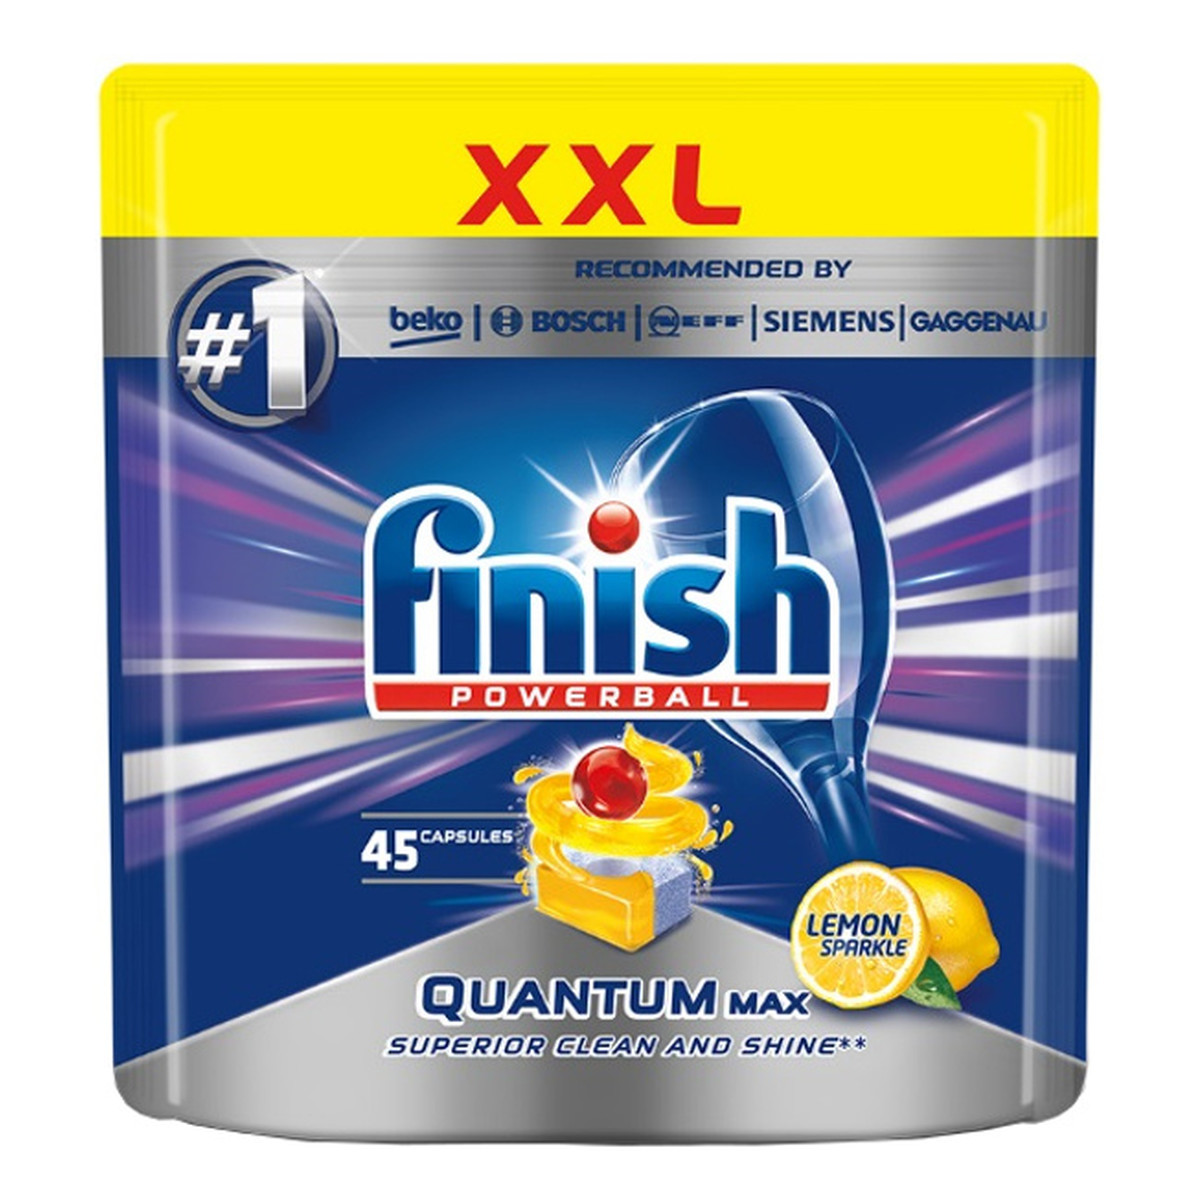 Finish Powerball Quantum Max tabletki do mycia naczyń w zmywarkach Lemon Sparkle 45szt